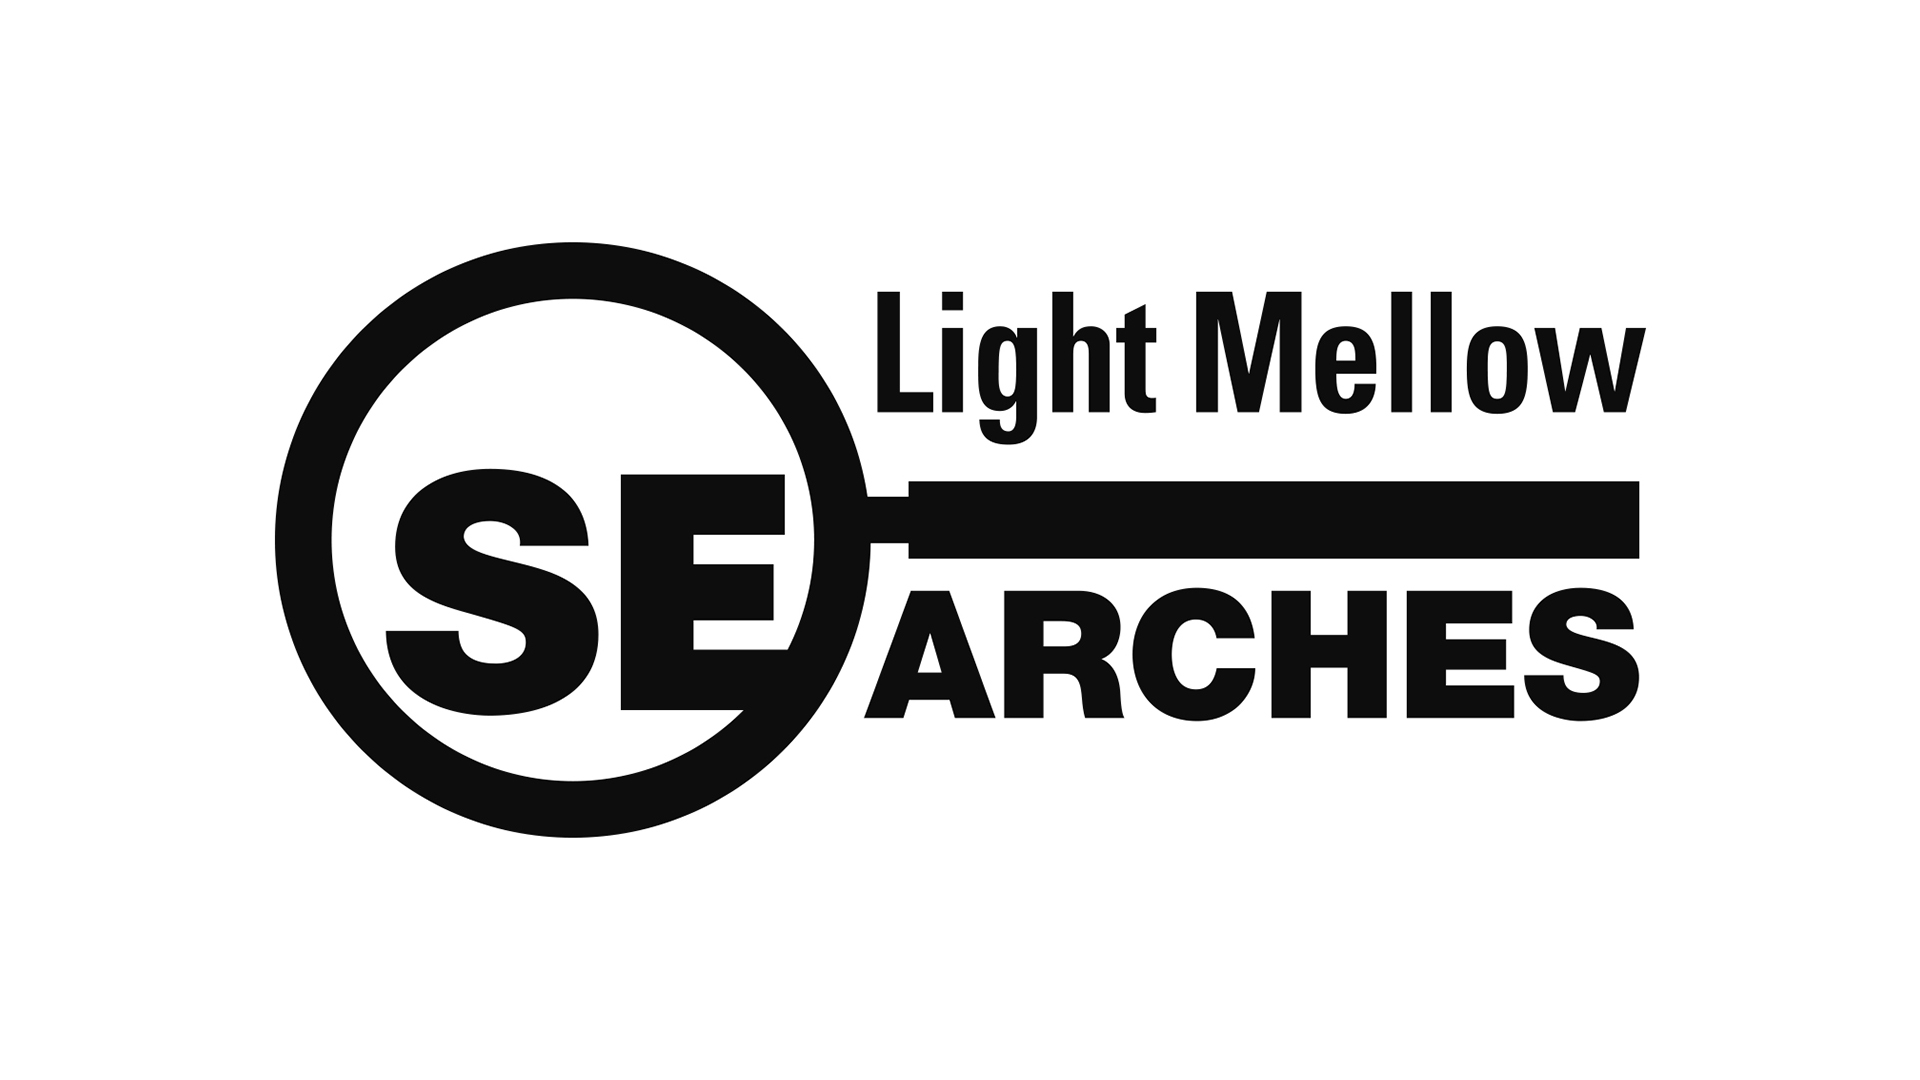 ライトメロウサーチーズ(Light Mellow Searches)